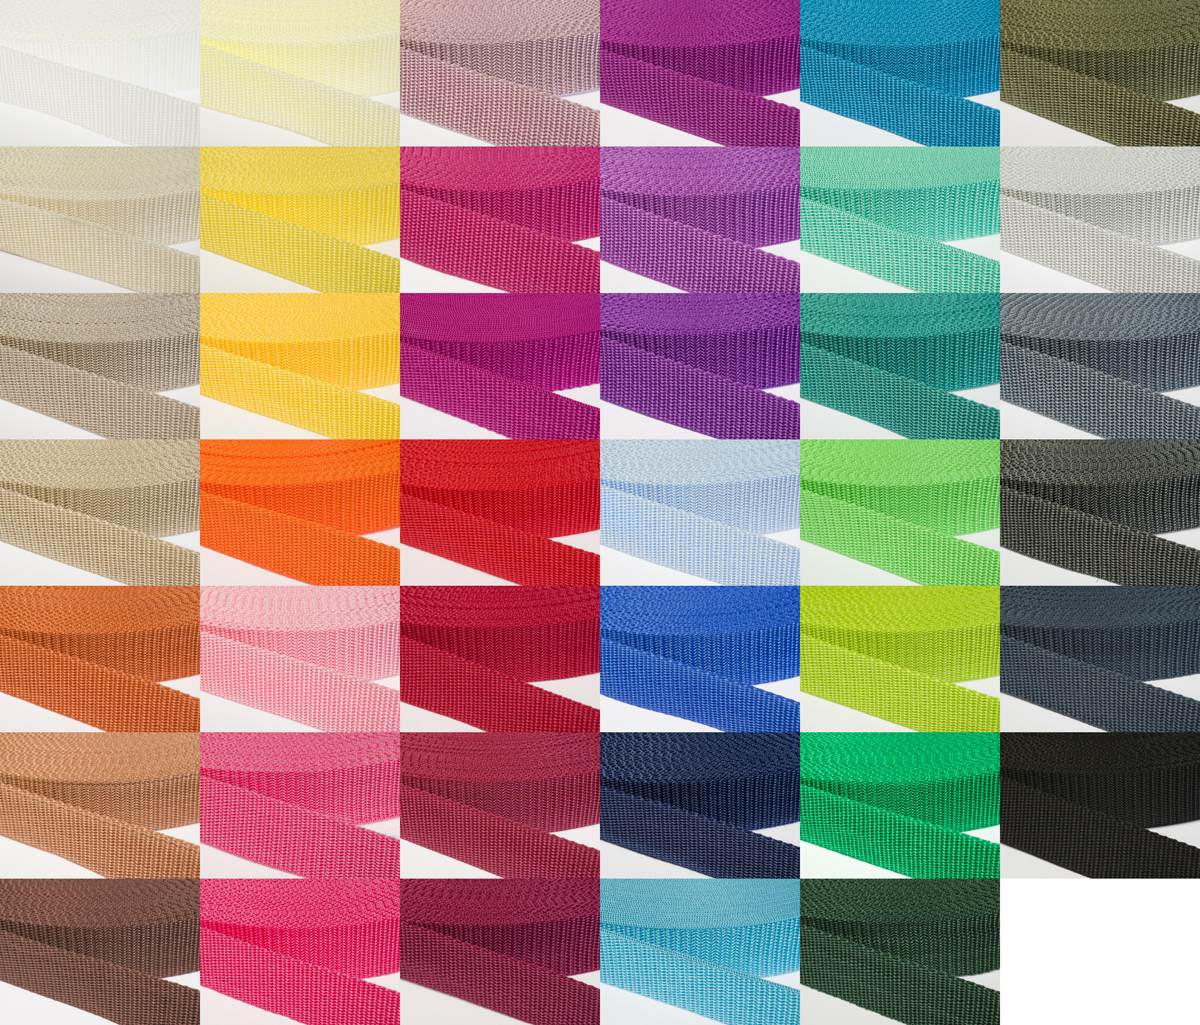 Gurtband 30mm breit aus Polypropylen in 41 Farben 38 - mittelgrau 50 Meter